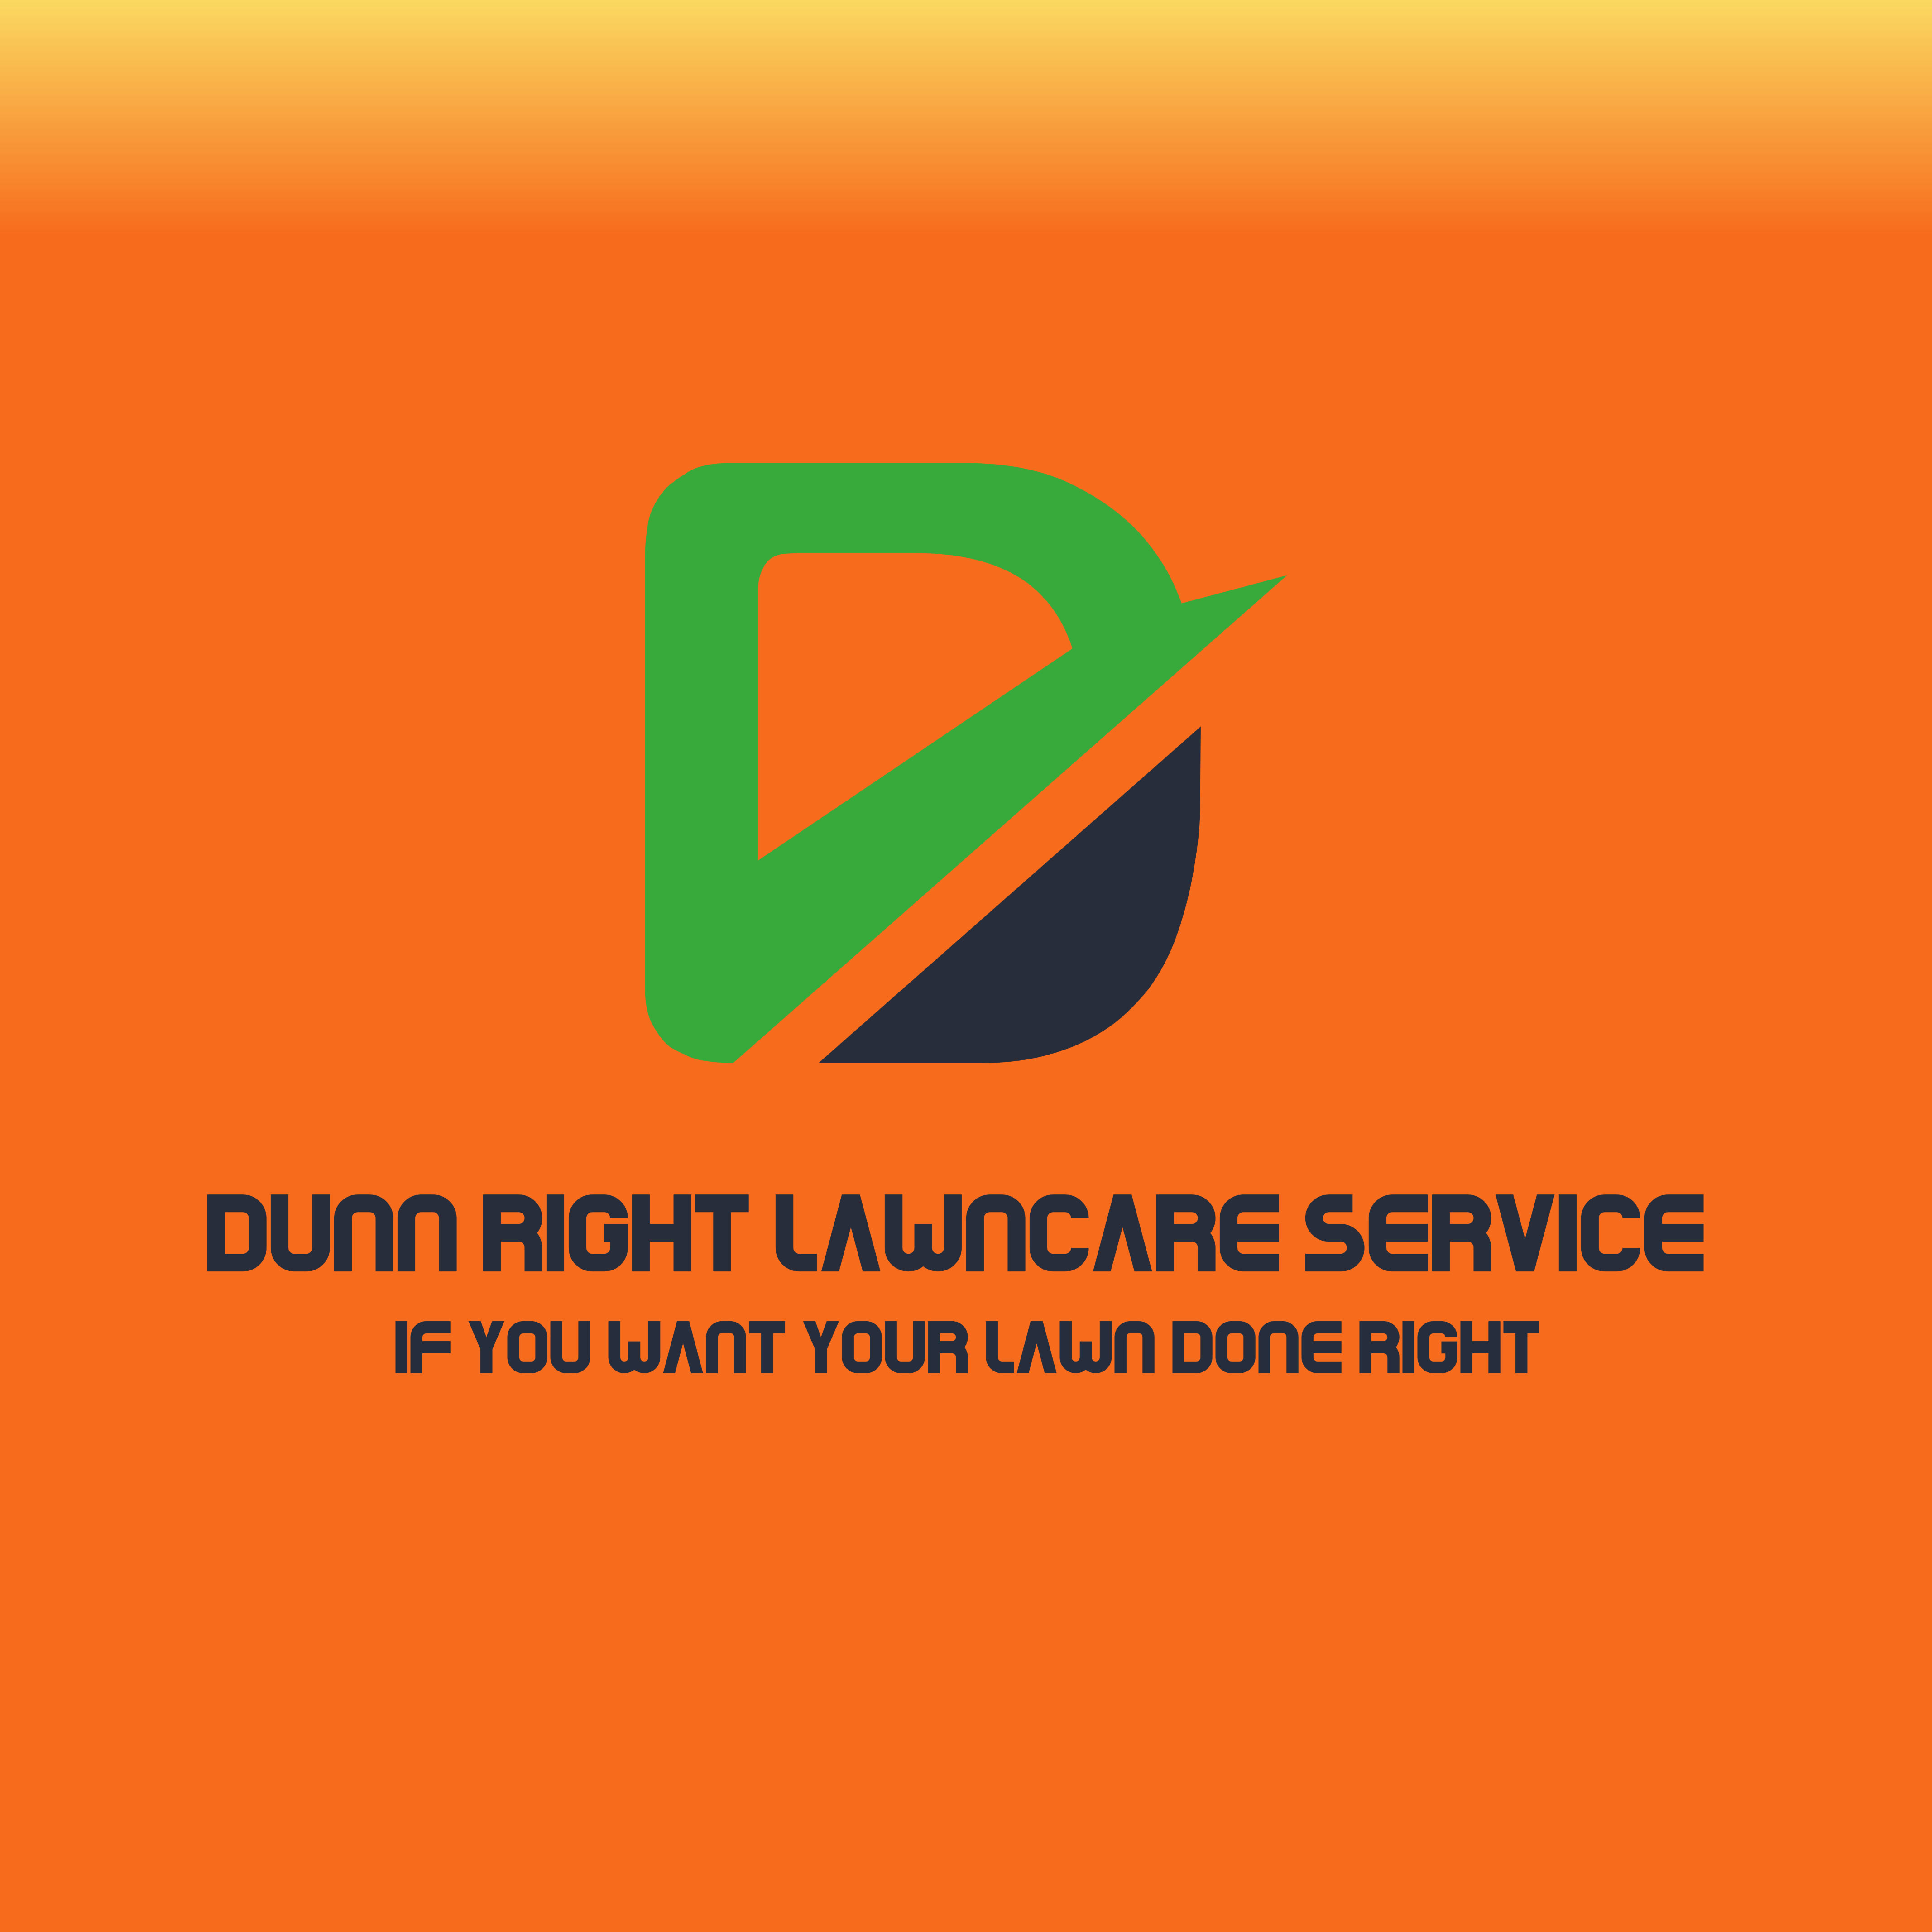 Dunn Right Lawncare Service